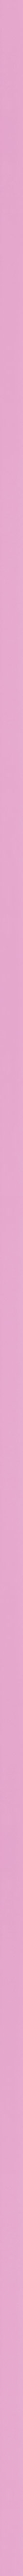 Squared pink frame frame